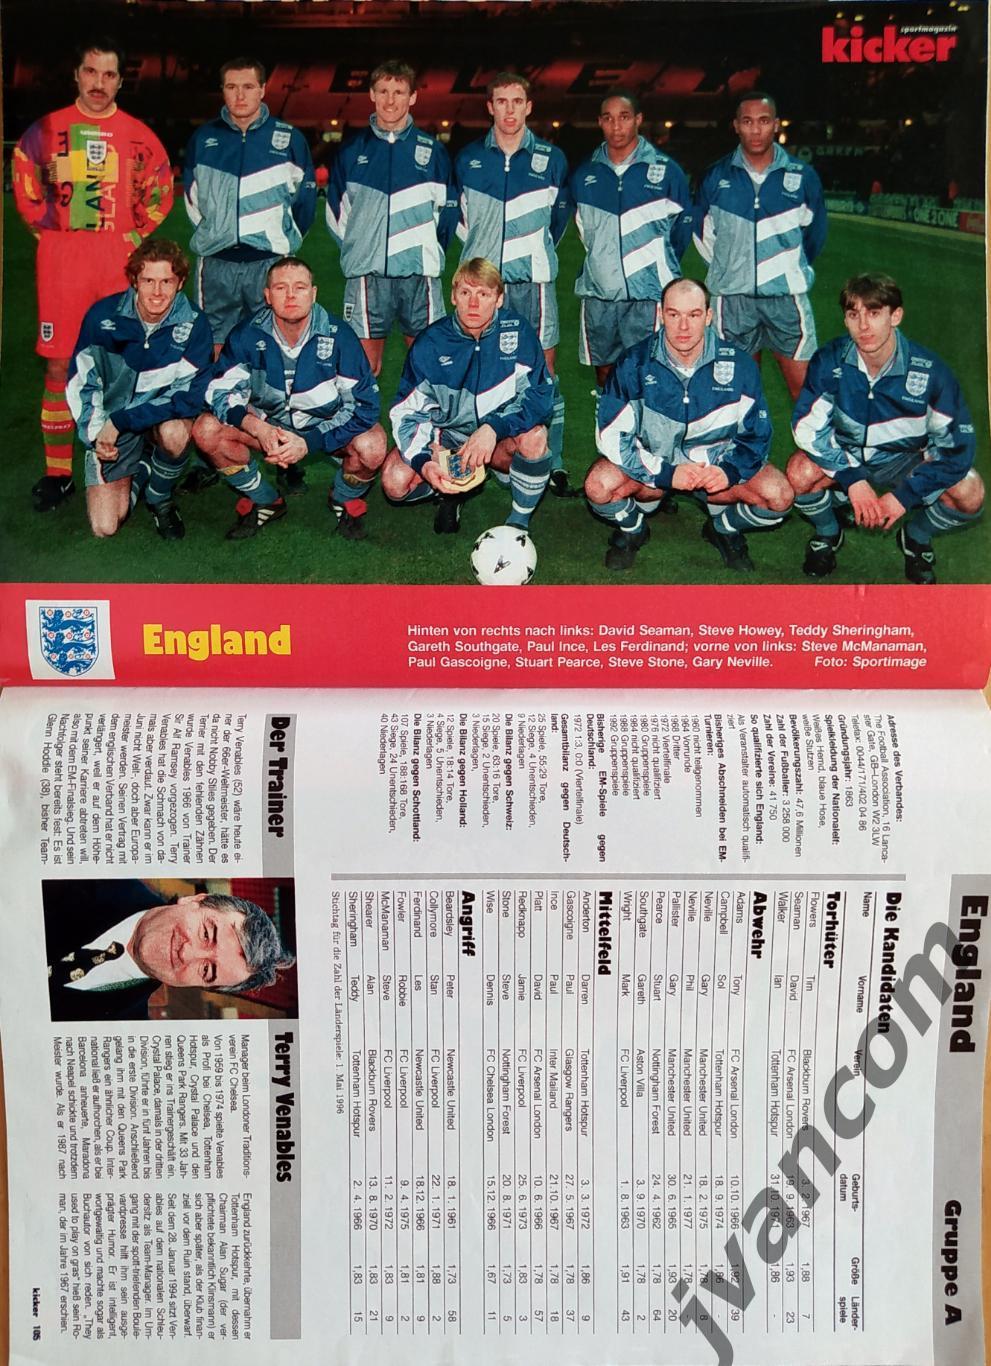 KICKER SONDERHEFT. Чемпионат Европы по футболу 1996 года. Превью участников. 6